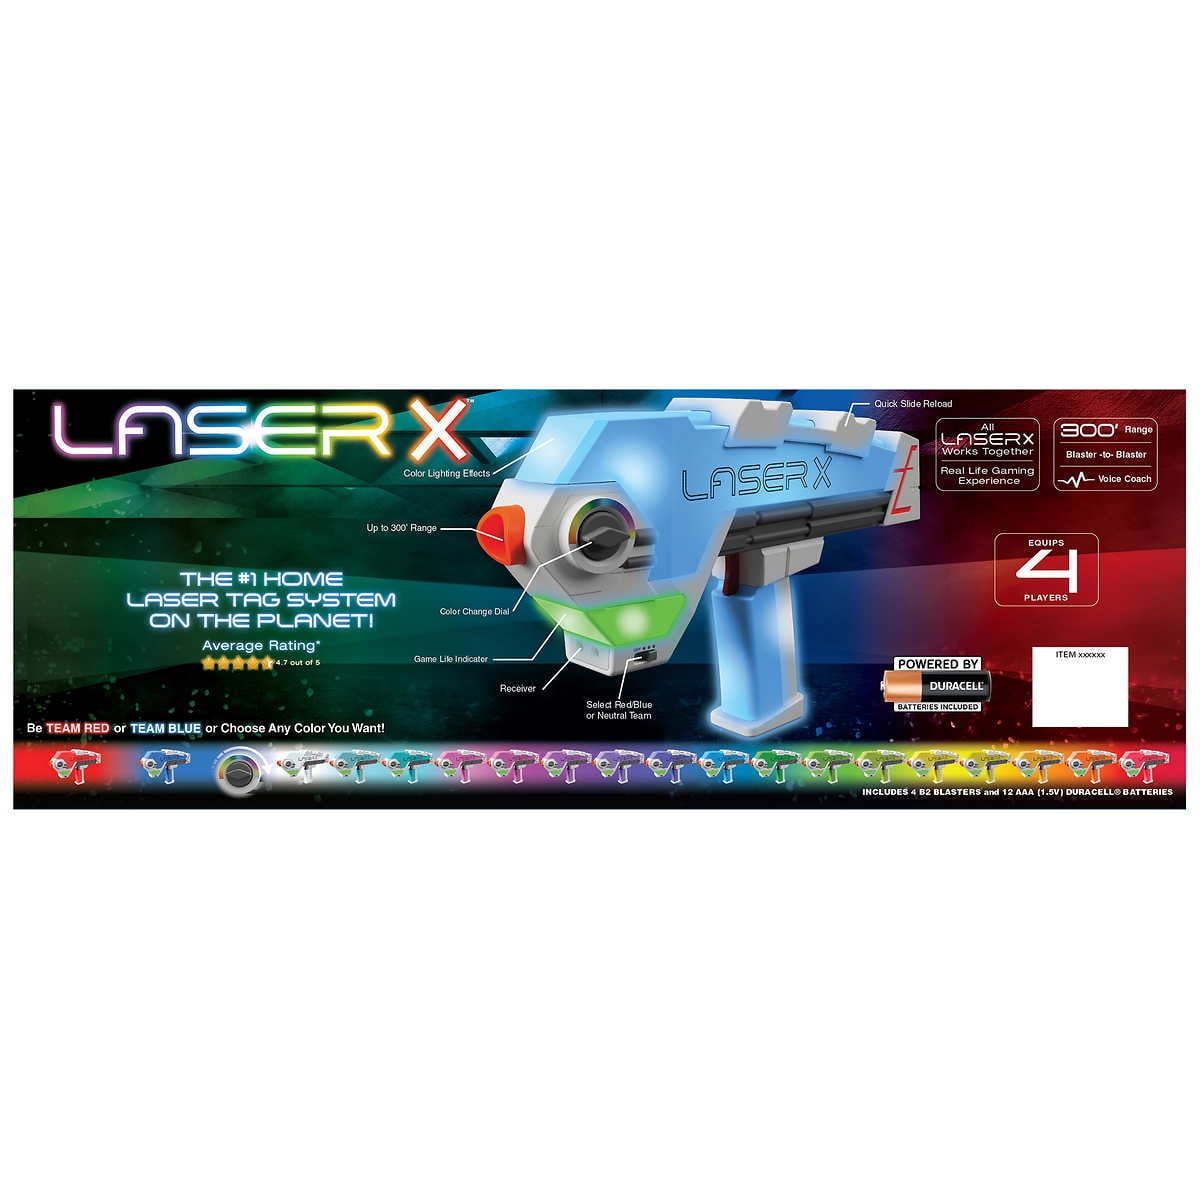 Laser X Revolution Dos Pistolas — Playfunstore